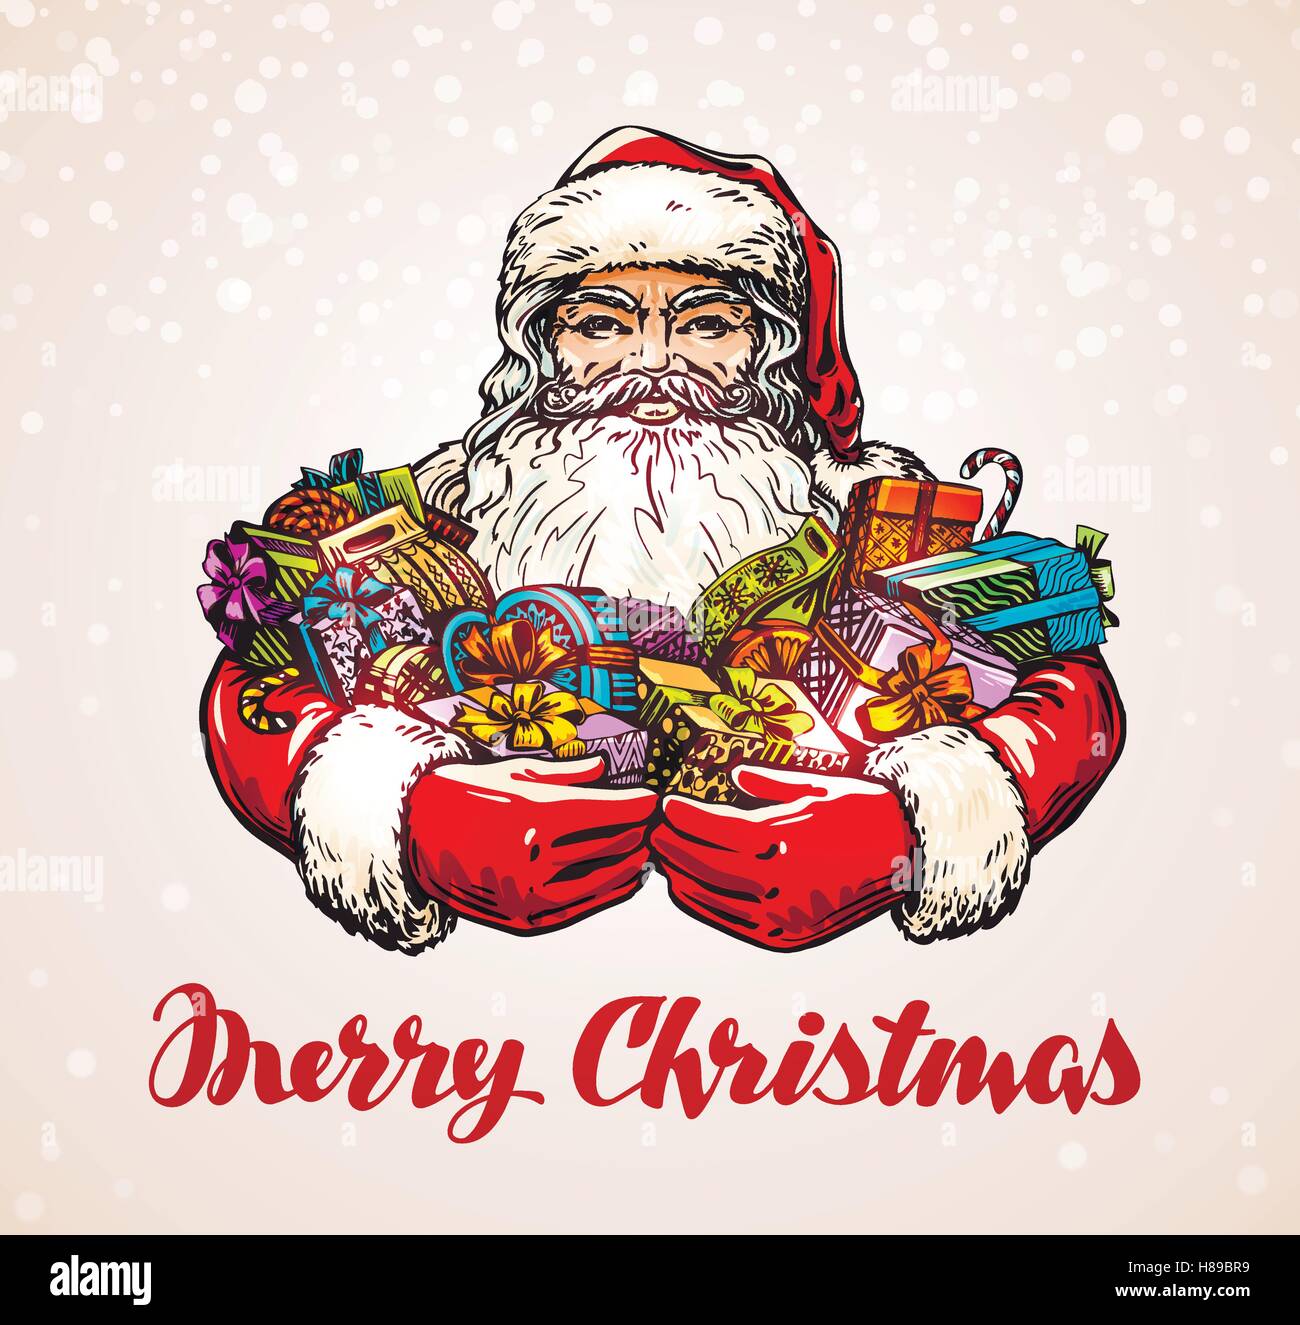 Weihnachten. Weihnachtsmann mit Geschenken in Händen. Vektor-illustration Stock Vektor